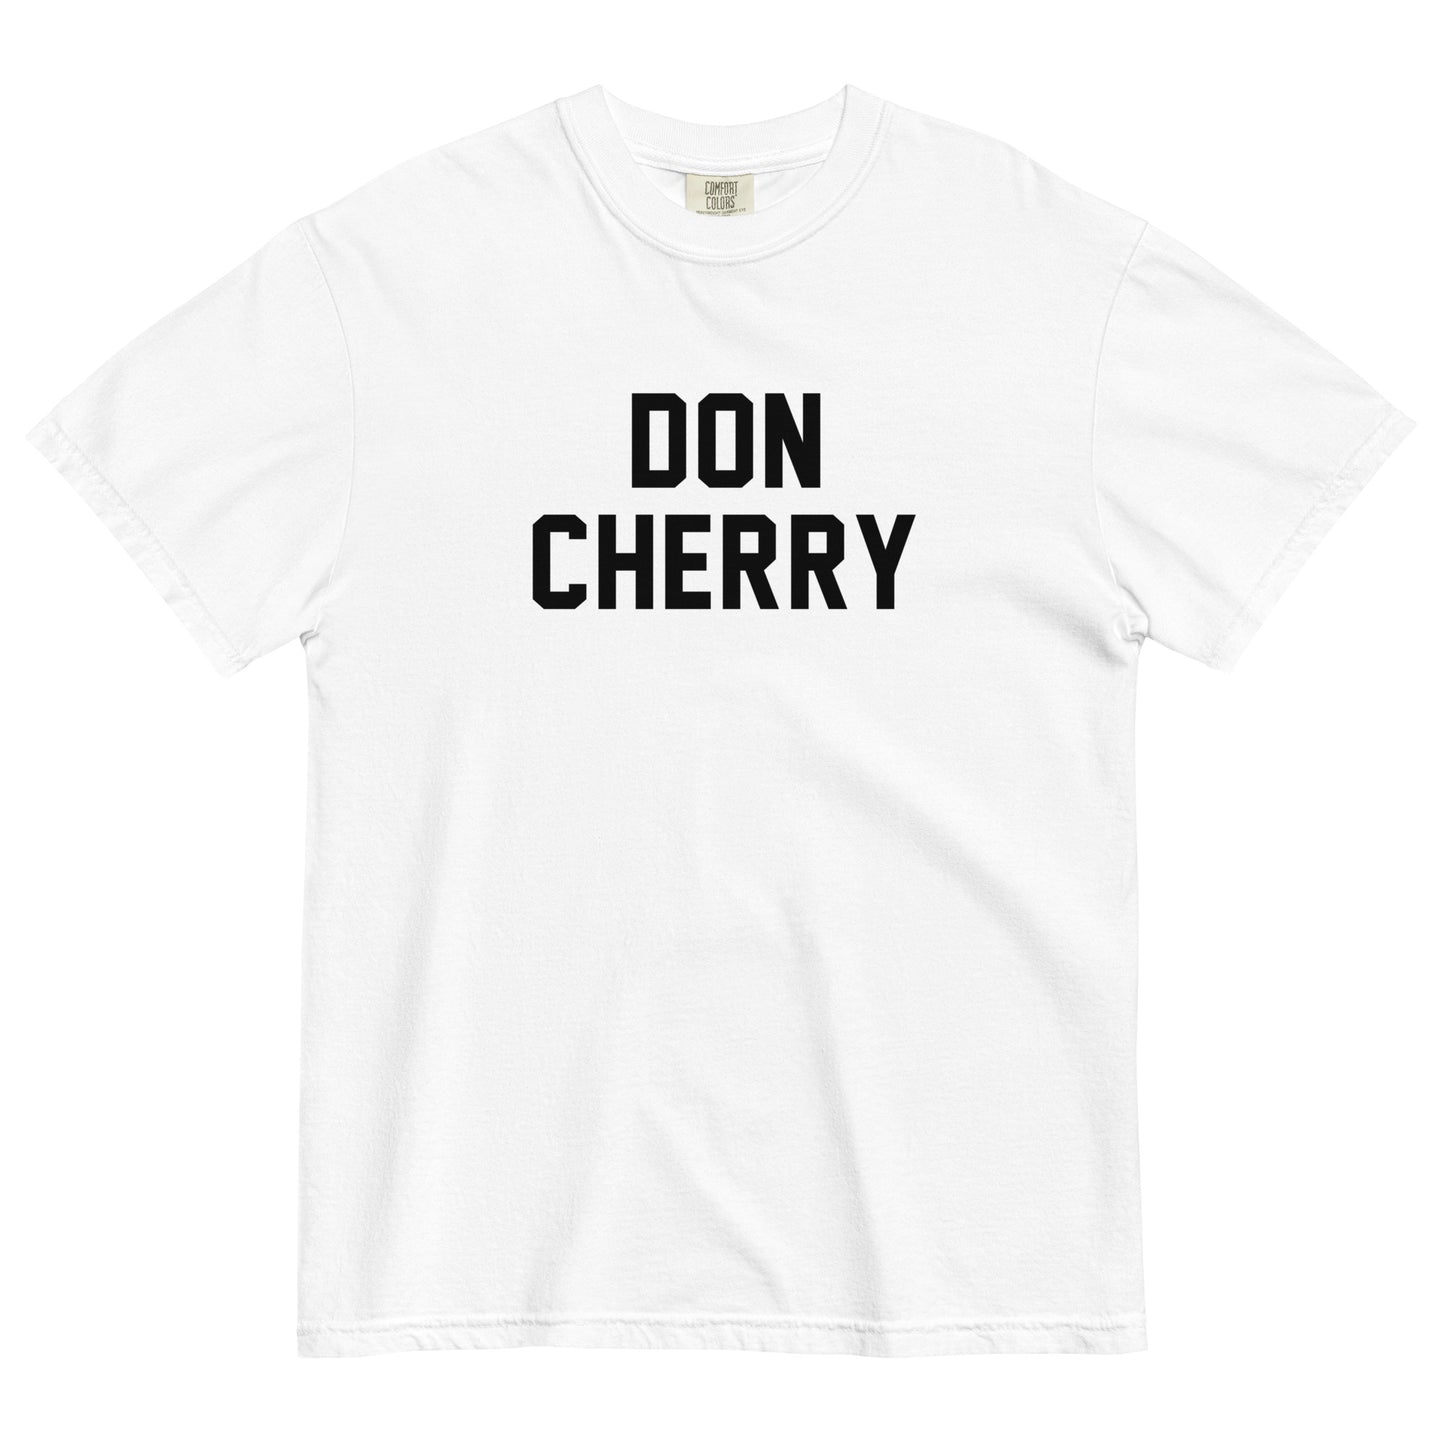 DON CHERRY